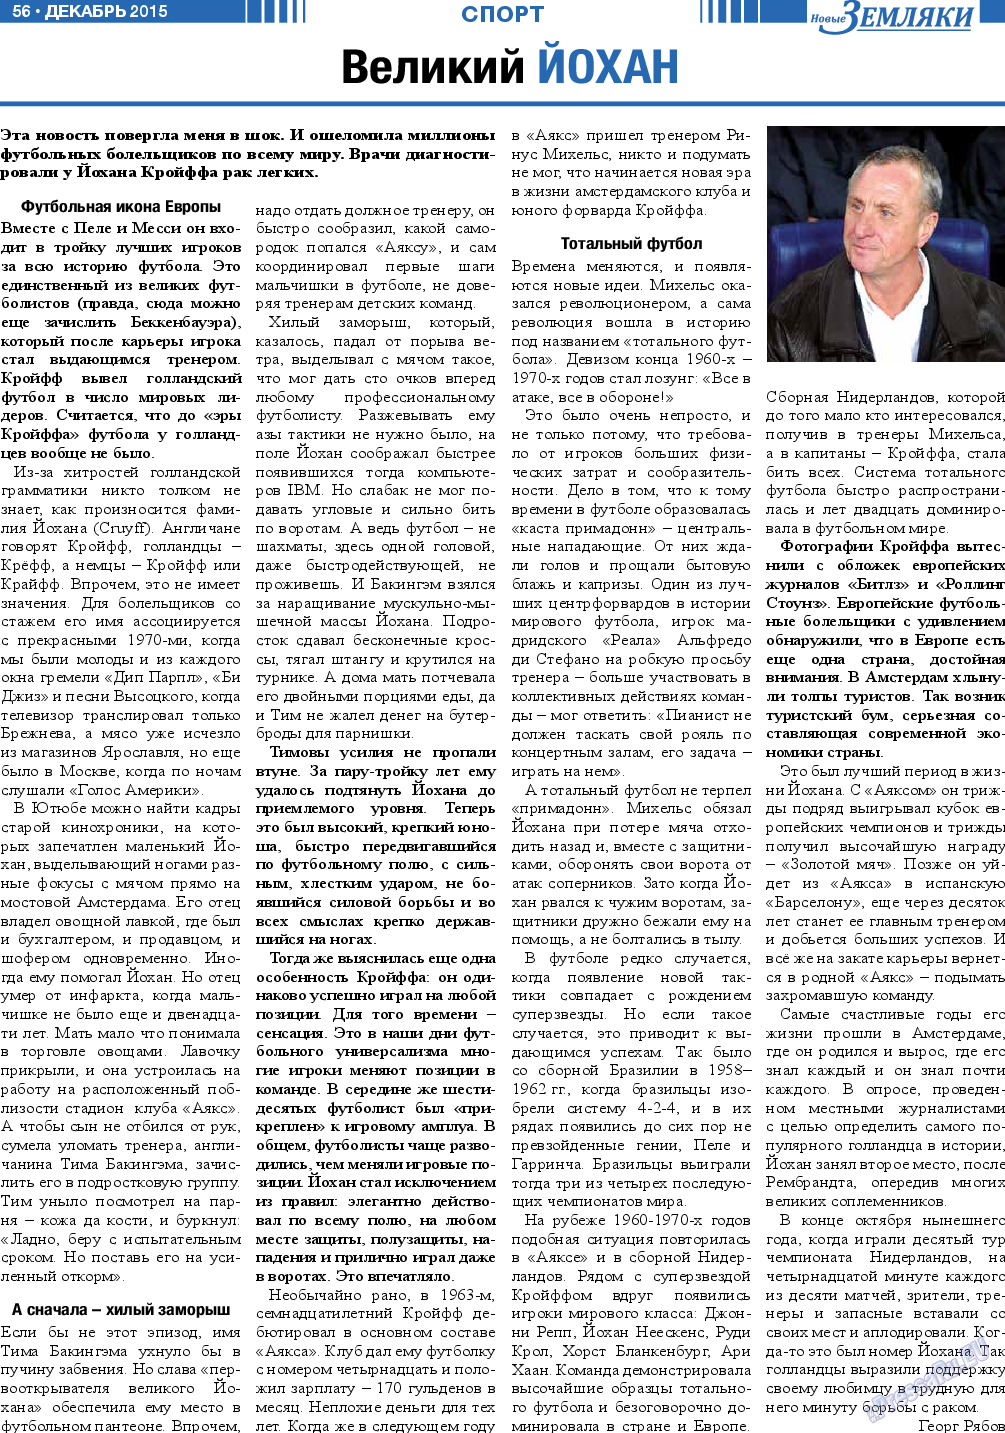 Новые Земляки, газета. 2015 №12 стр.56